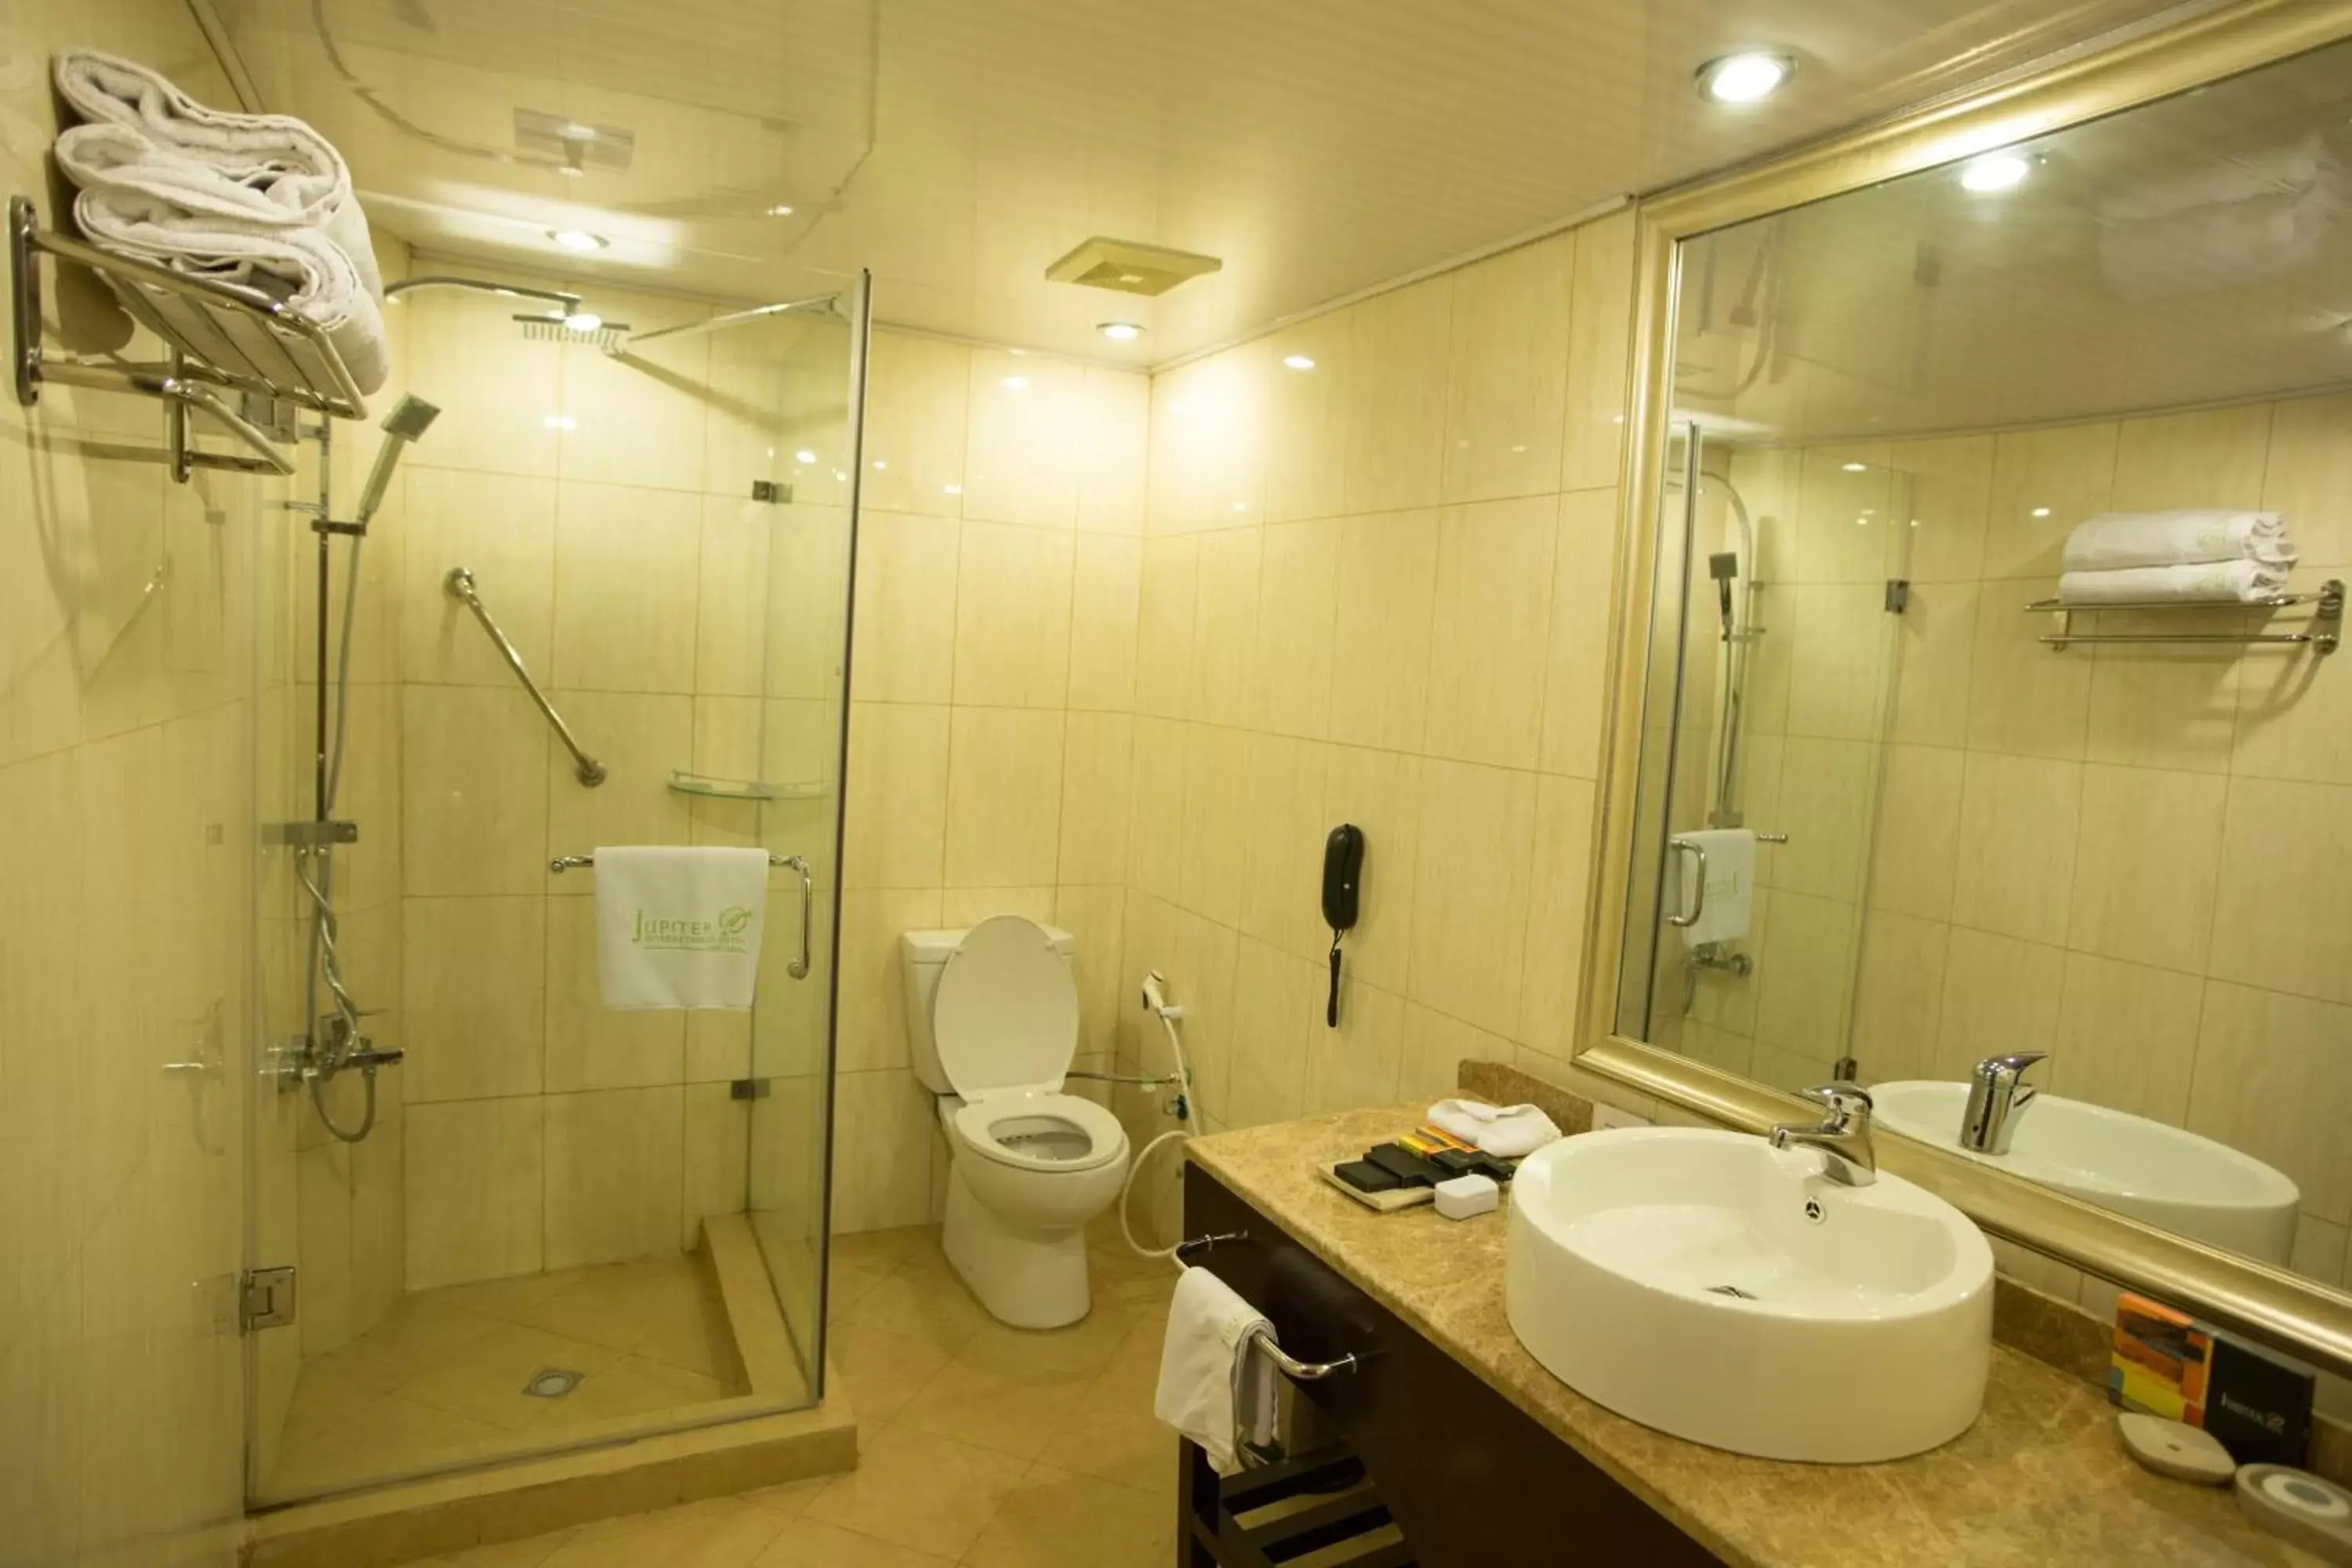 Bathroom in Jupiter International Hotel - Bole